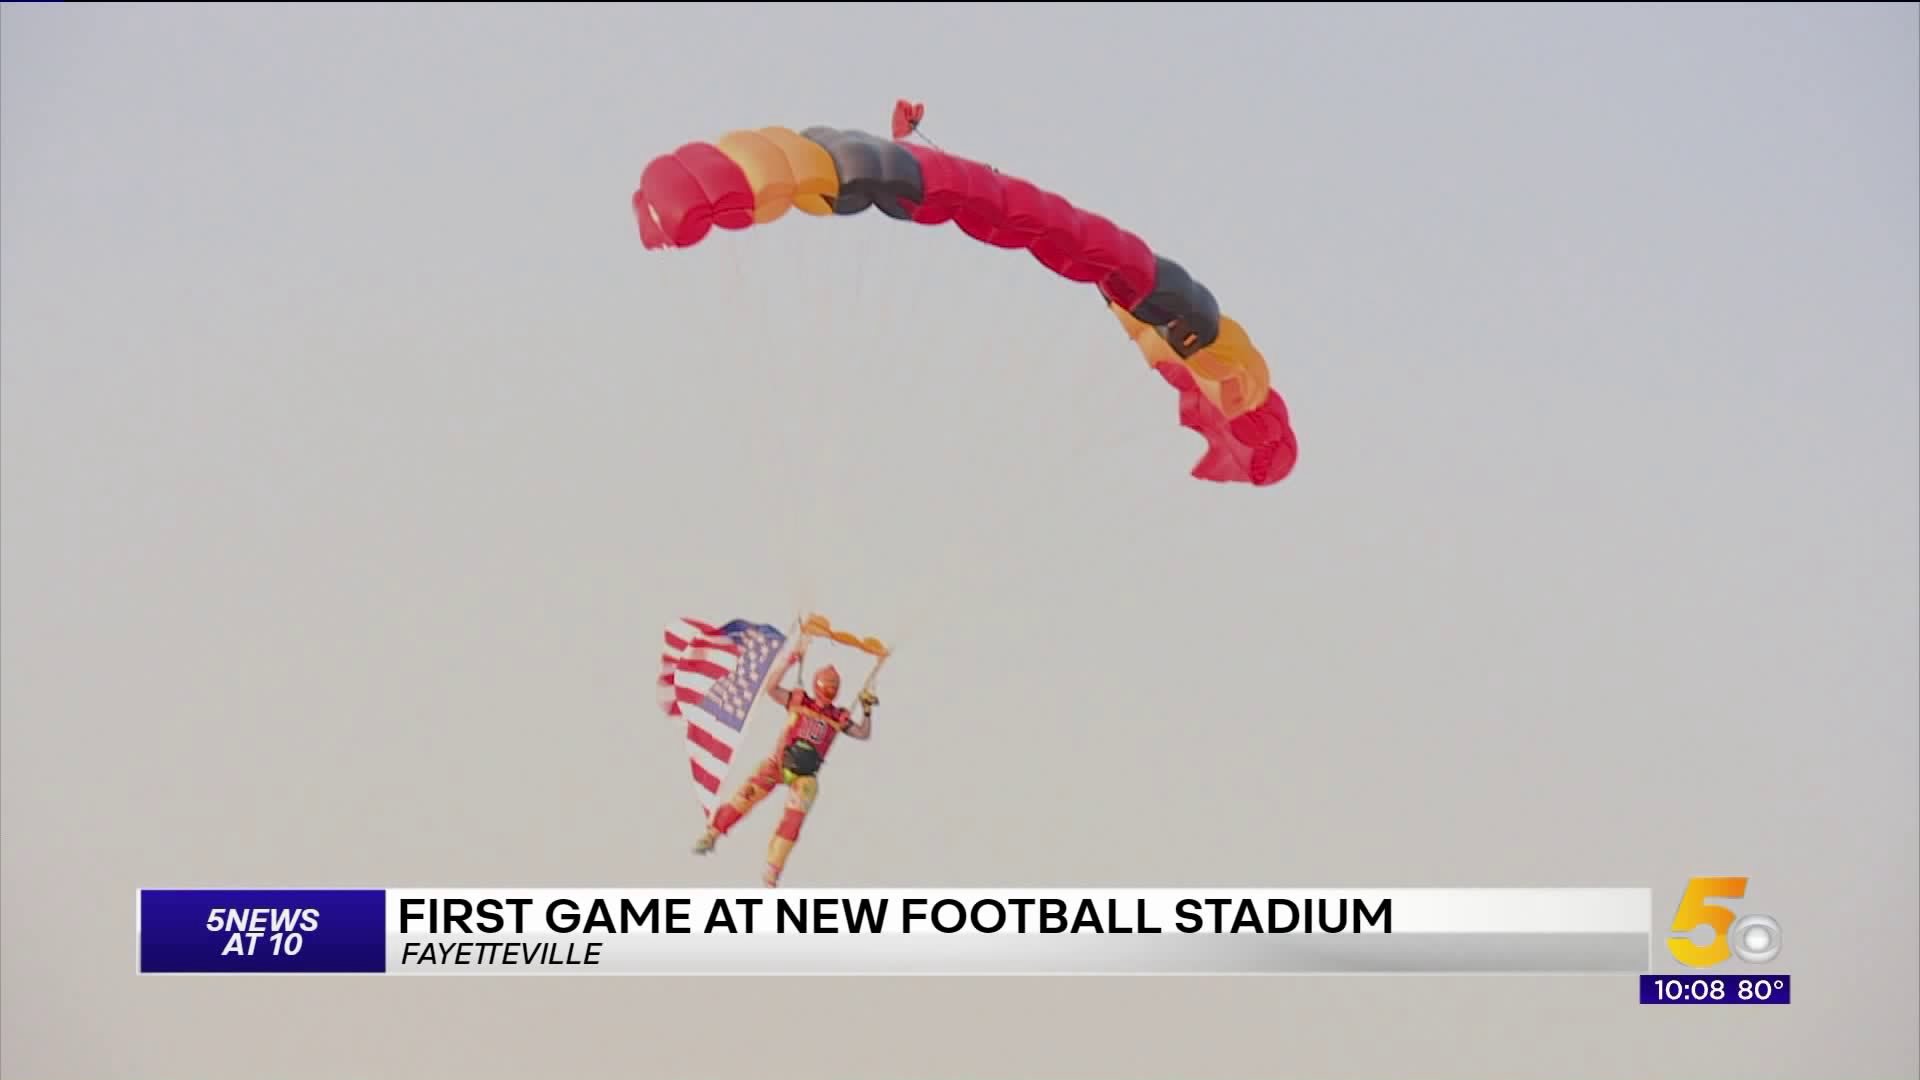 Farmington Kicks Off New Football Stadium With Sky Divers, Rivalry Win